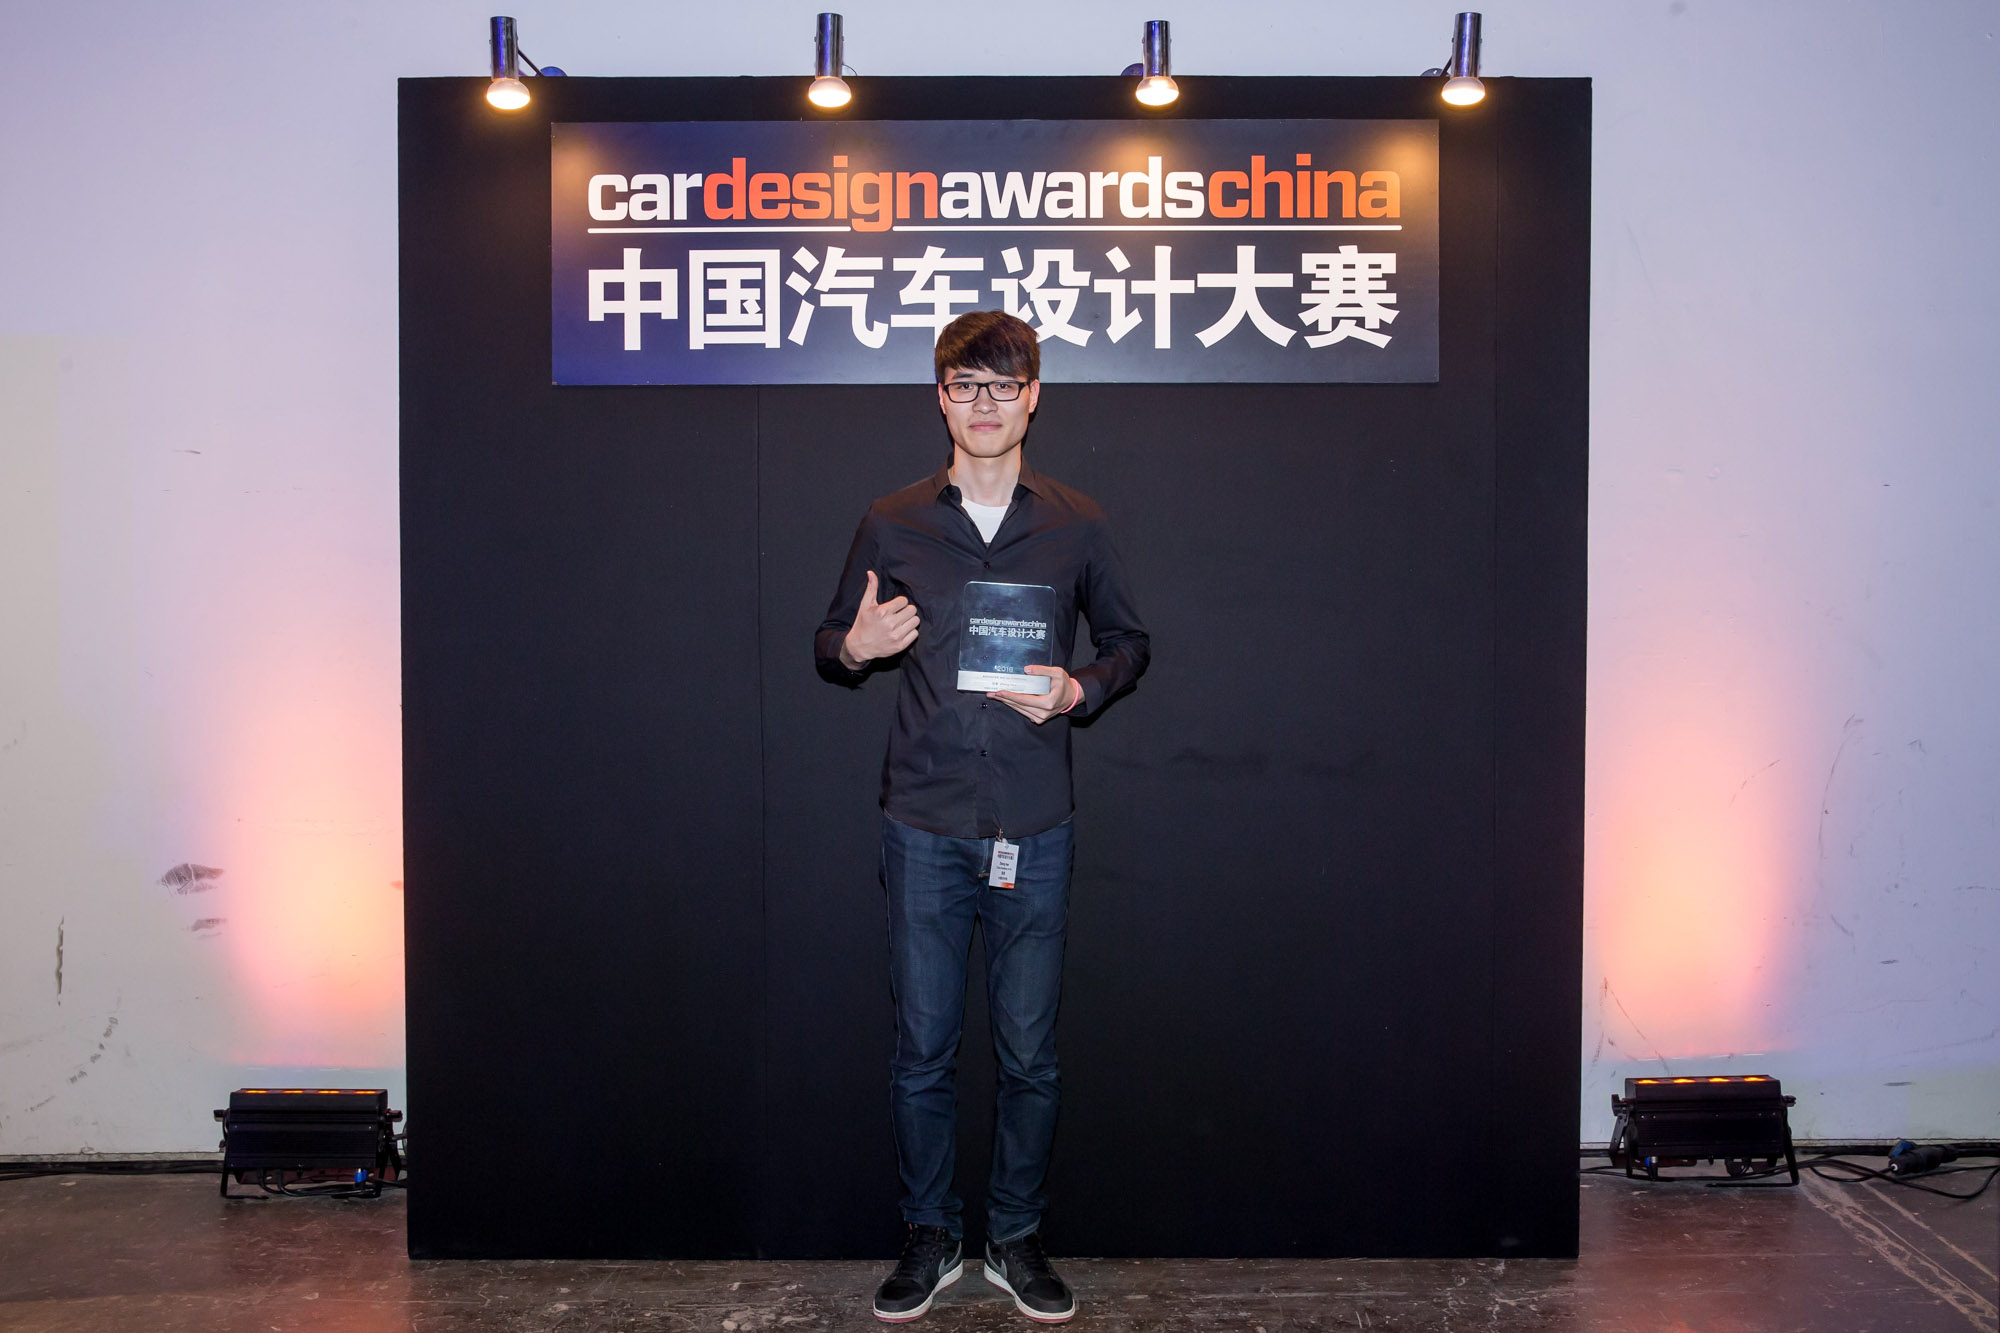 car-design-awards-china-event-9